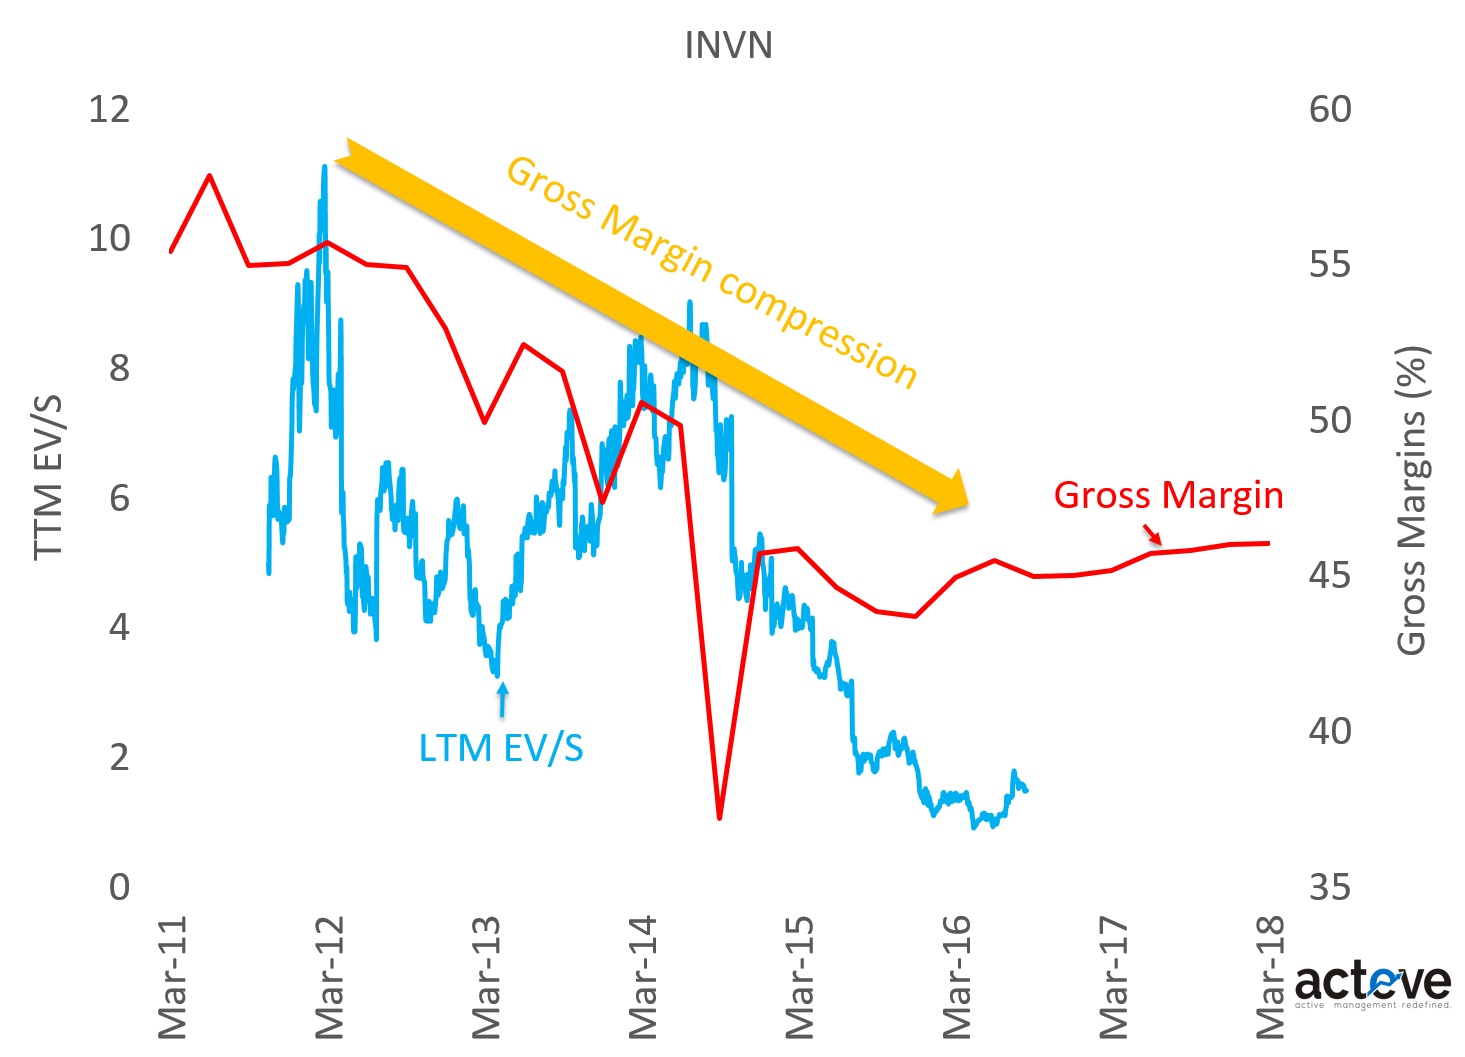 INVN EV/S vs. Gross Margins